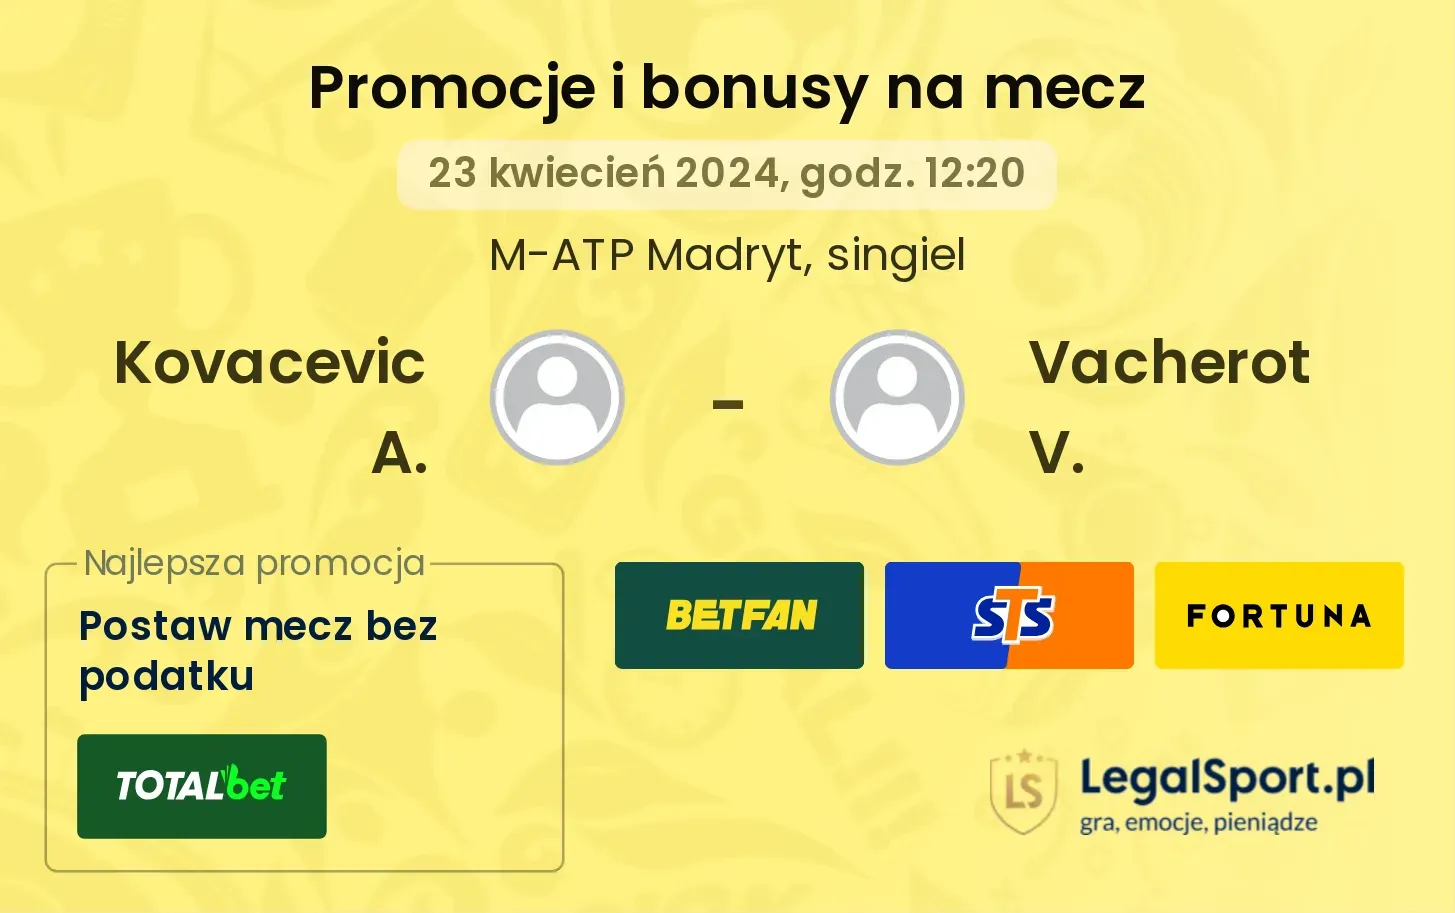 Kovacevic A. - Vacherot V. promocje bonusy na mecz